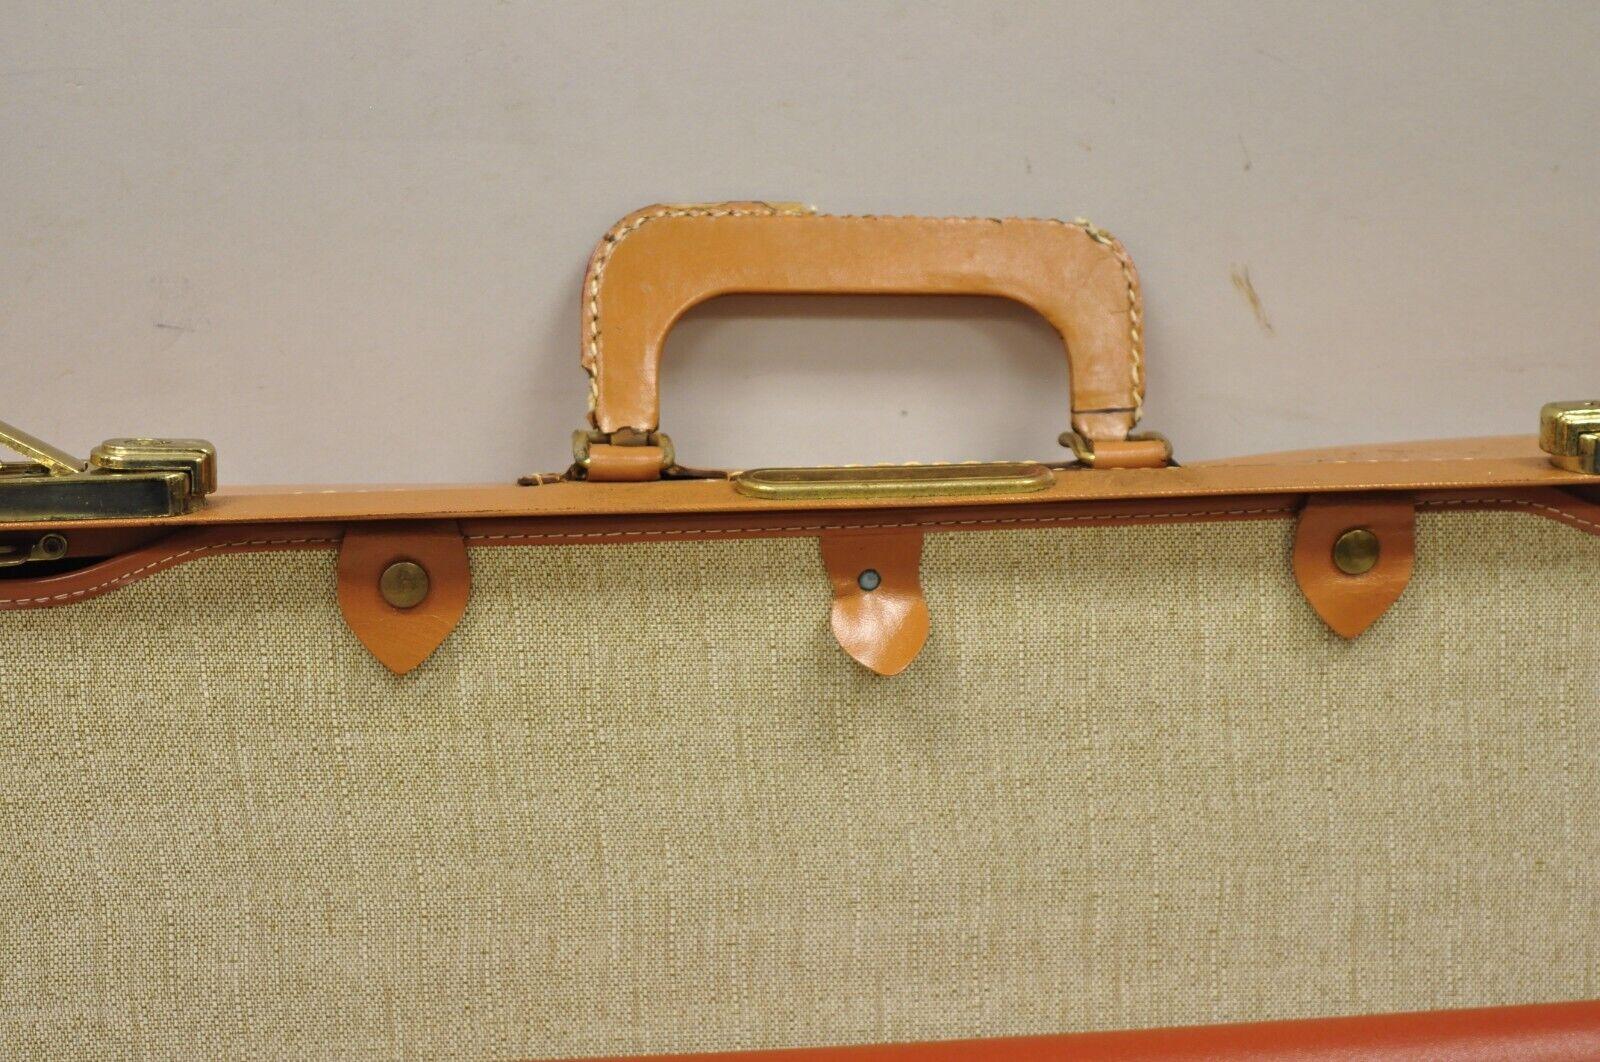 Vintage Genuine Top Grain Cowhide Leather Orange Suitcase Luggage 2